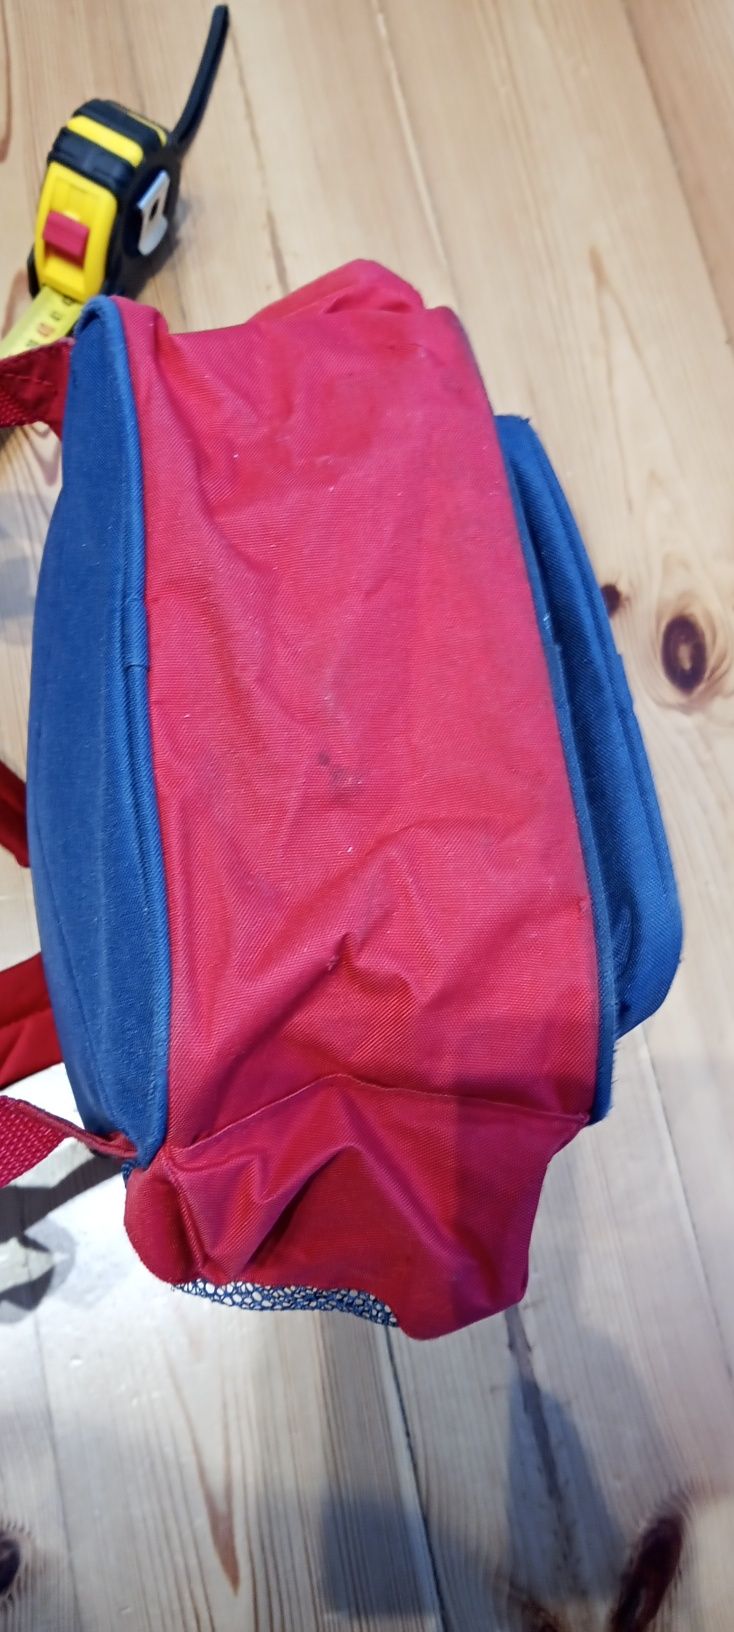 Plecak dla dzieci czerwono-granatowy Coccodrilo dla małych marynarzy